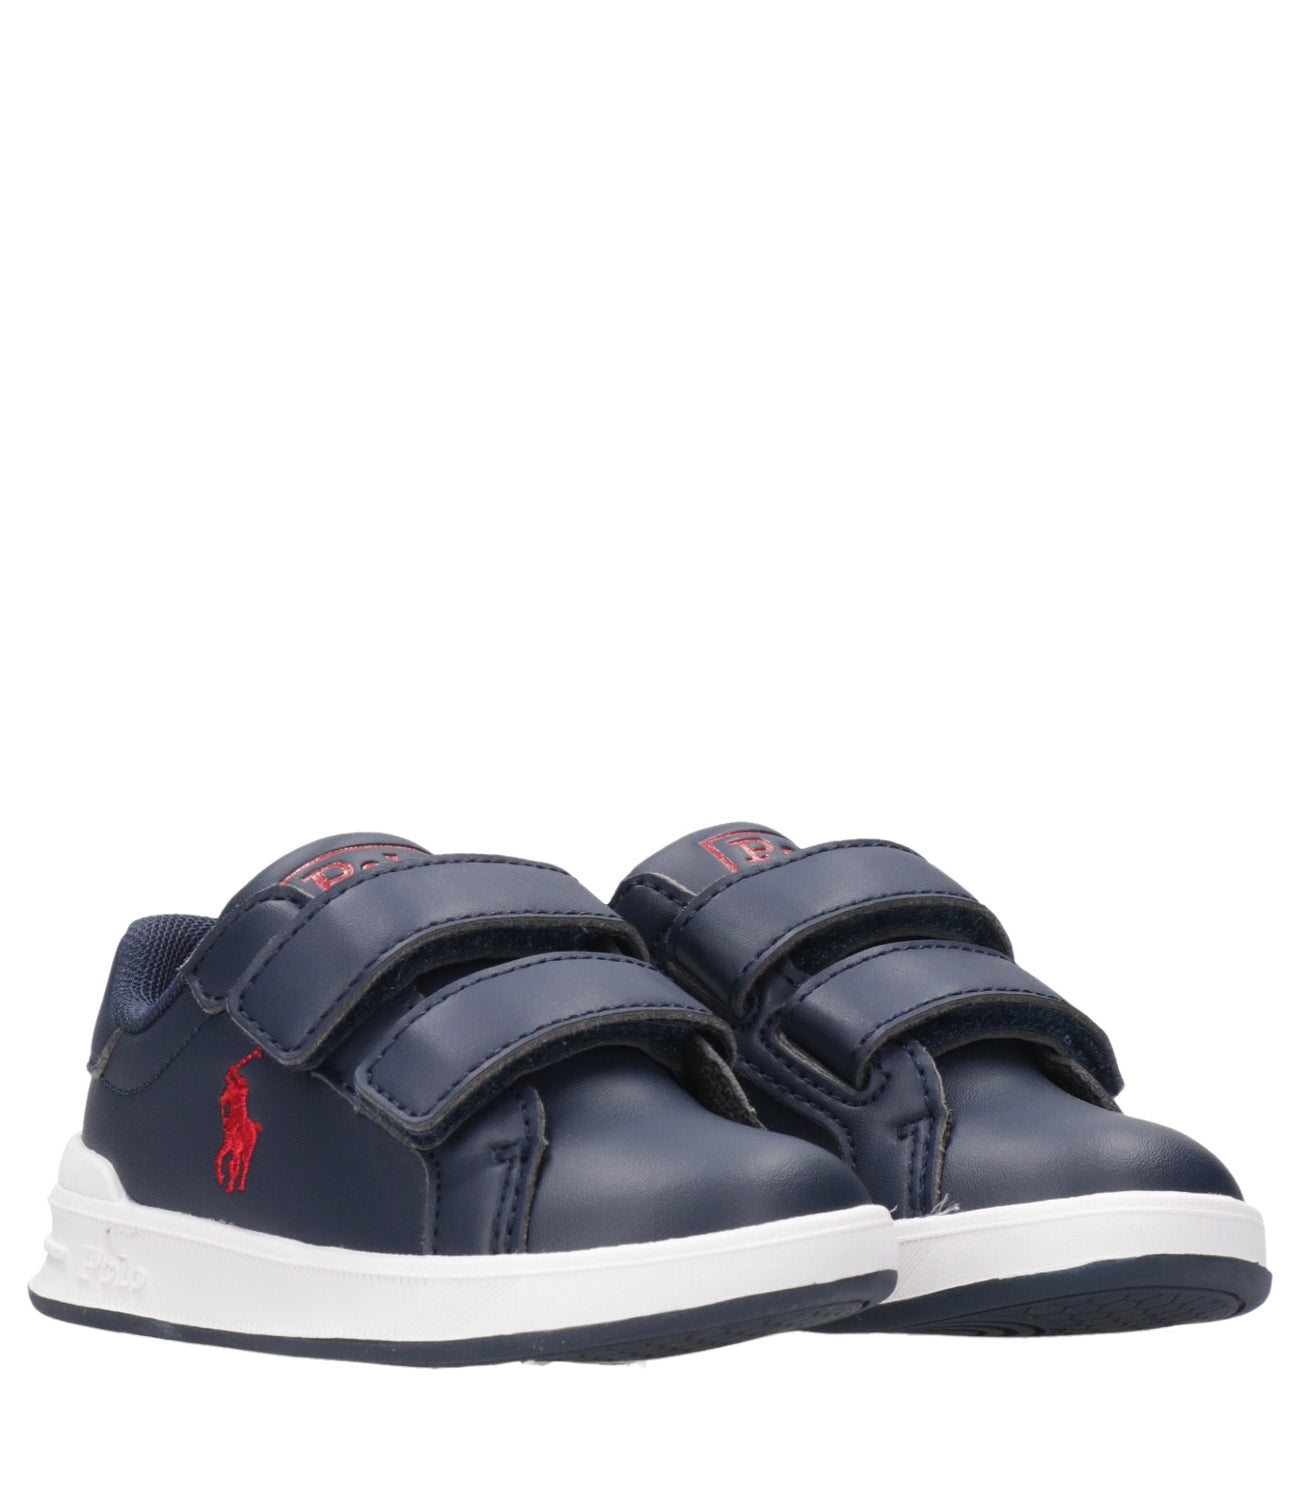 Ralph Lauren Childrenswear | Sneakers Heritage Court II EZ Blu navy e Rosso